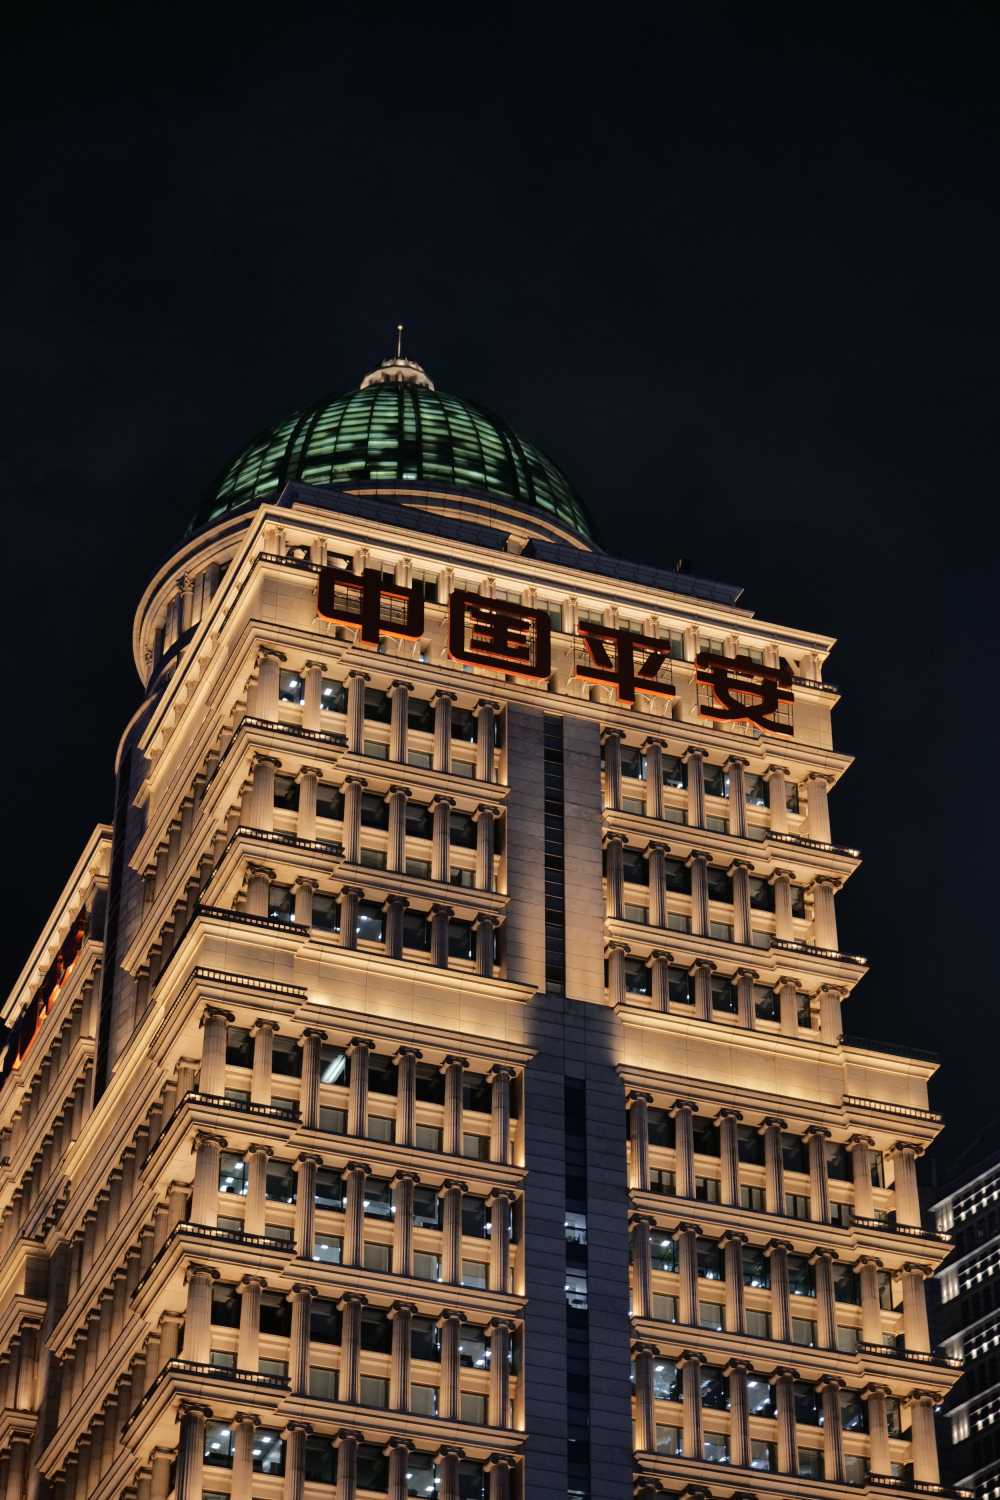 中国平安金融大厦